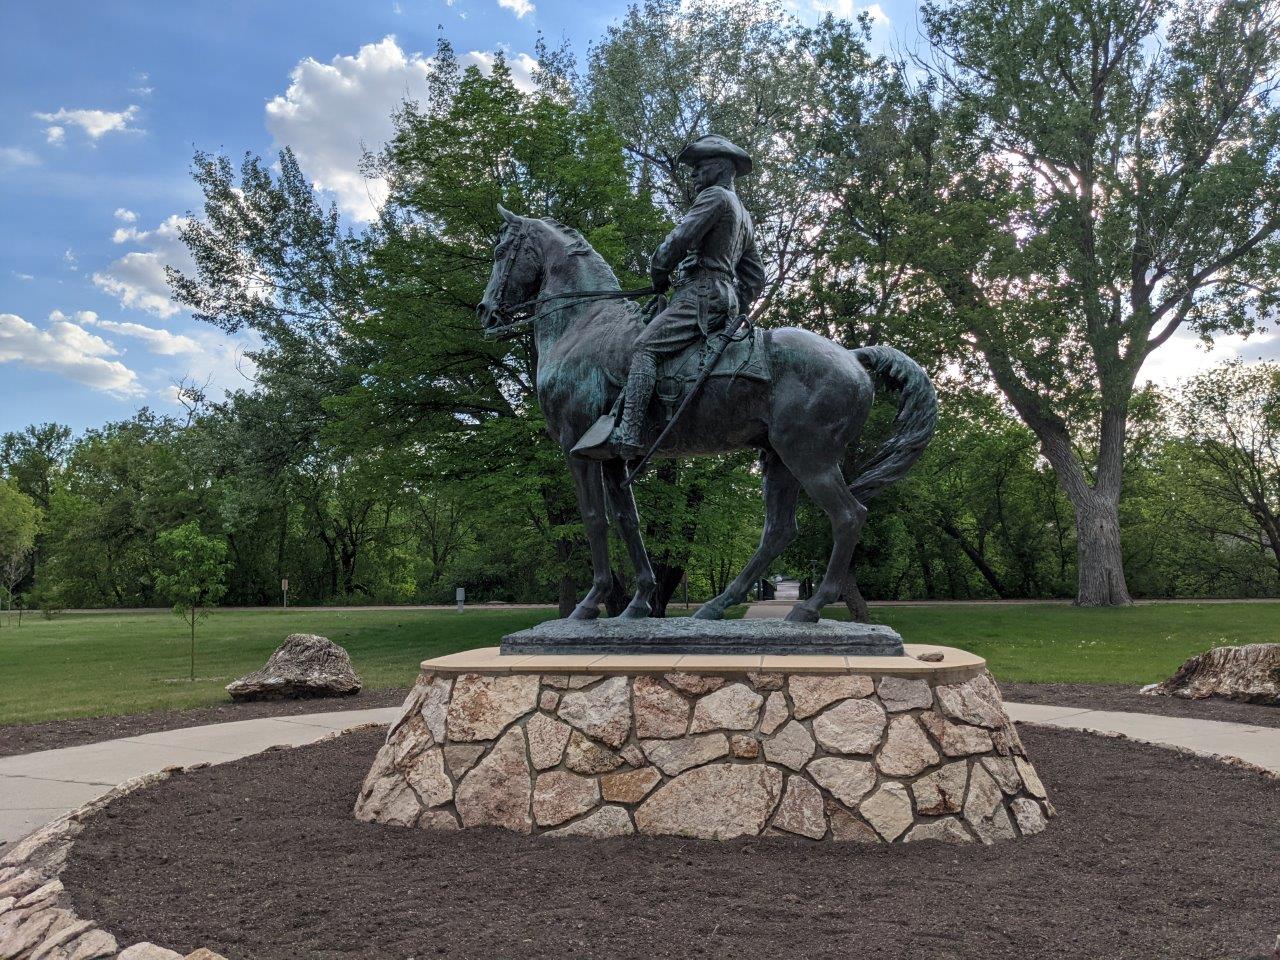 Theodore Roosevelt statue in Minot, North Dakota